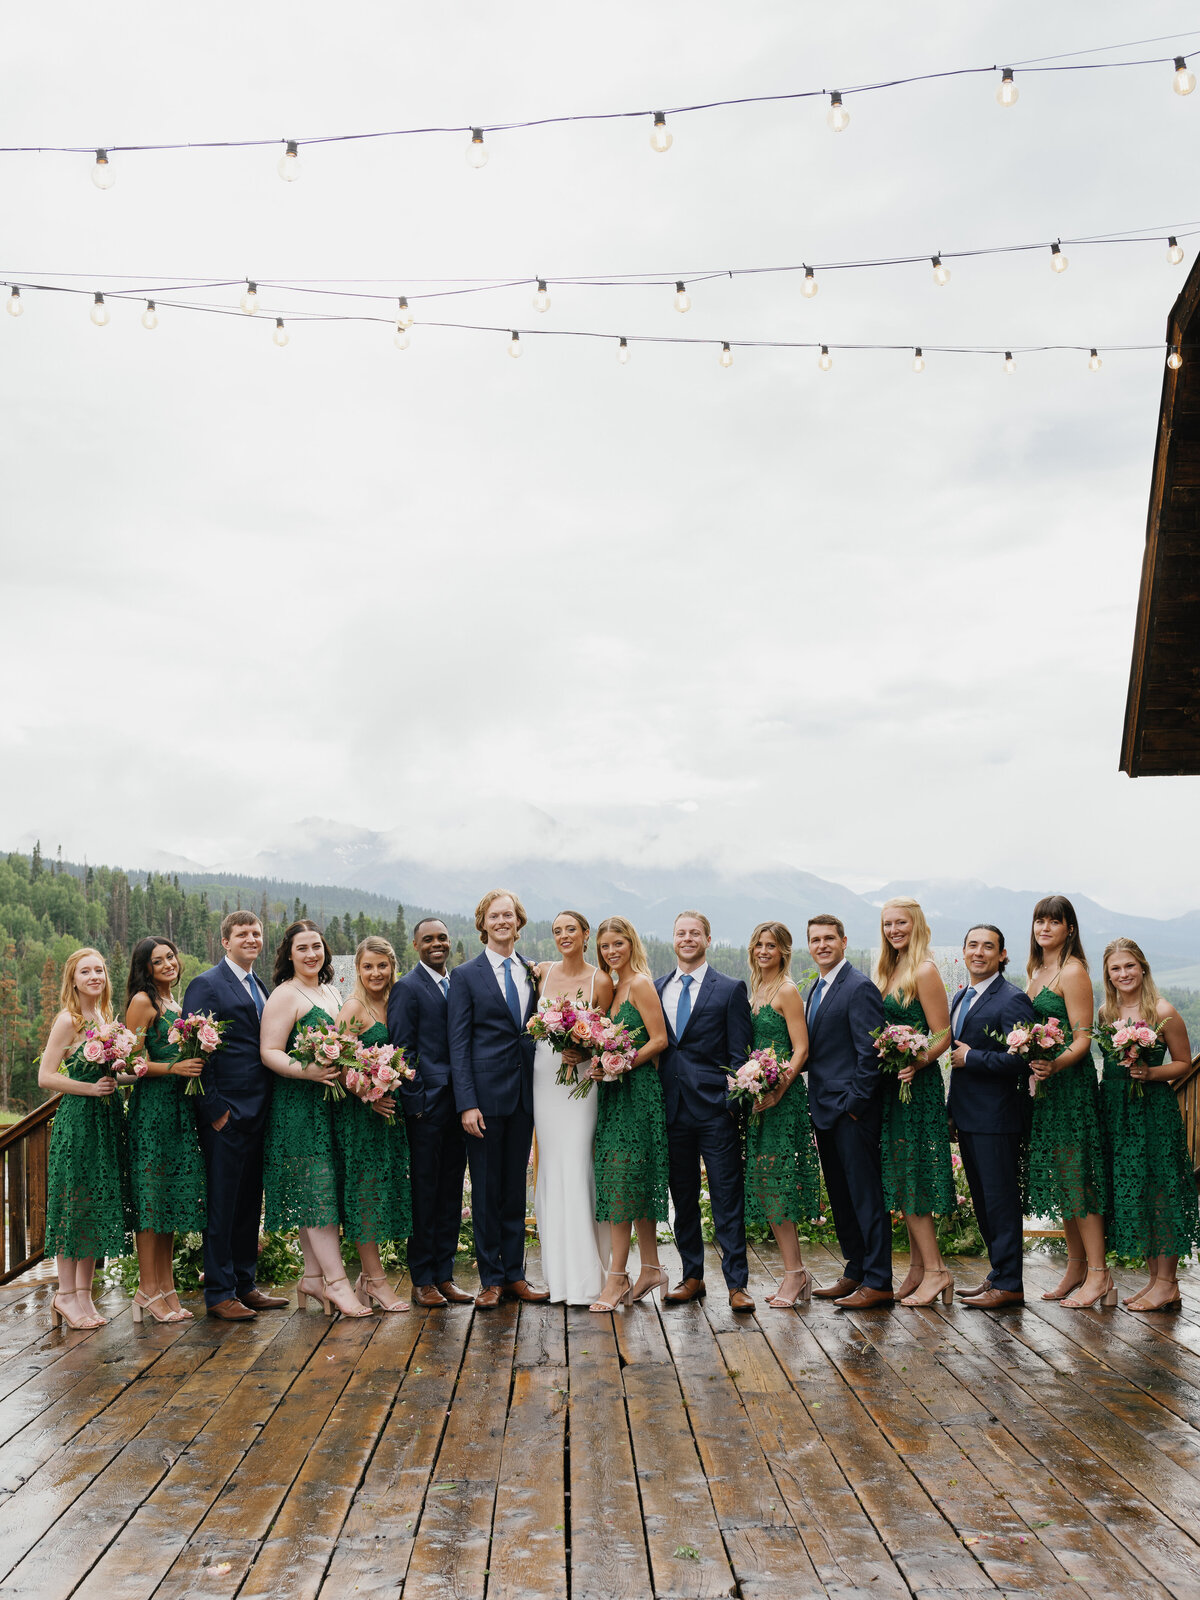 Logan & Ben - Fashion-Forward Mountaintop Wedding in Telluride, Colorado-31